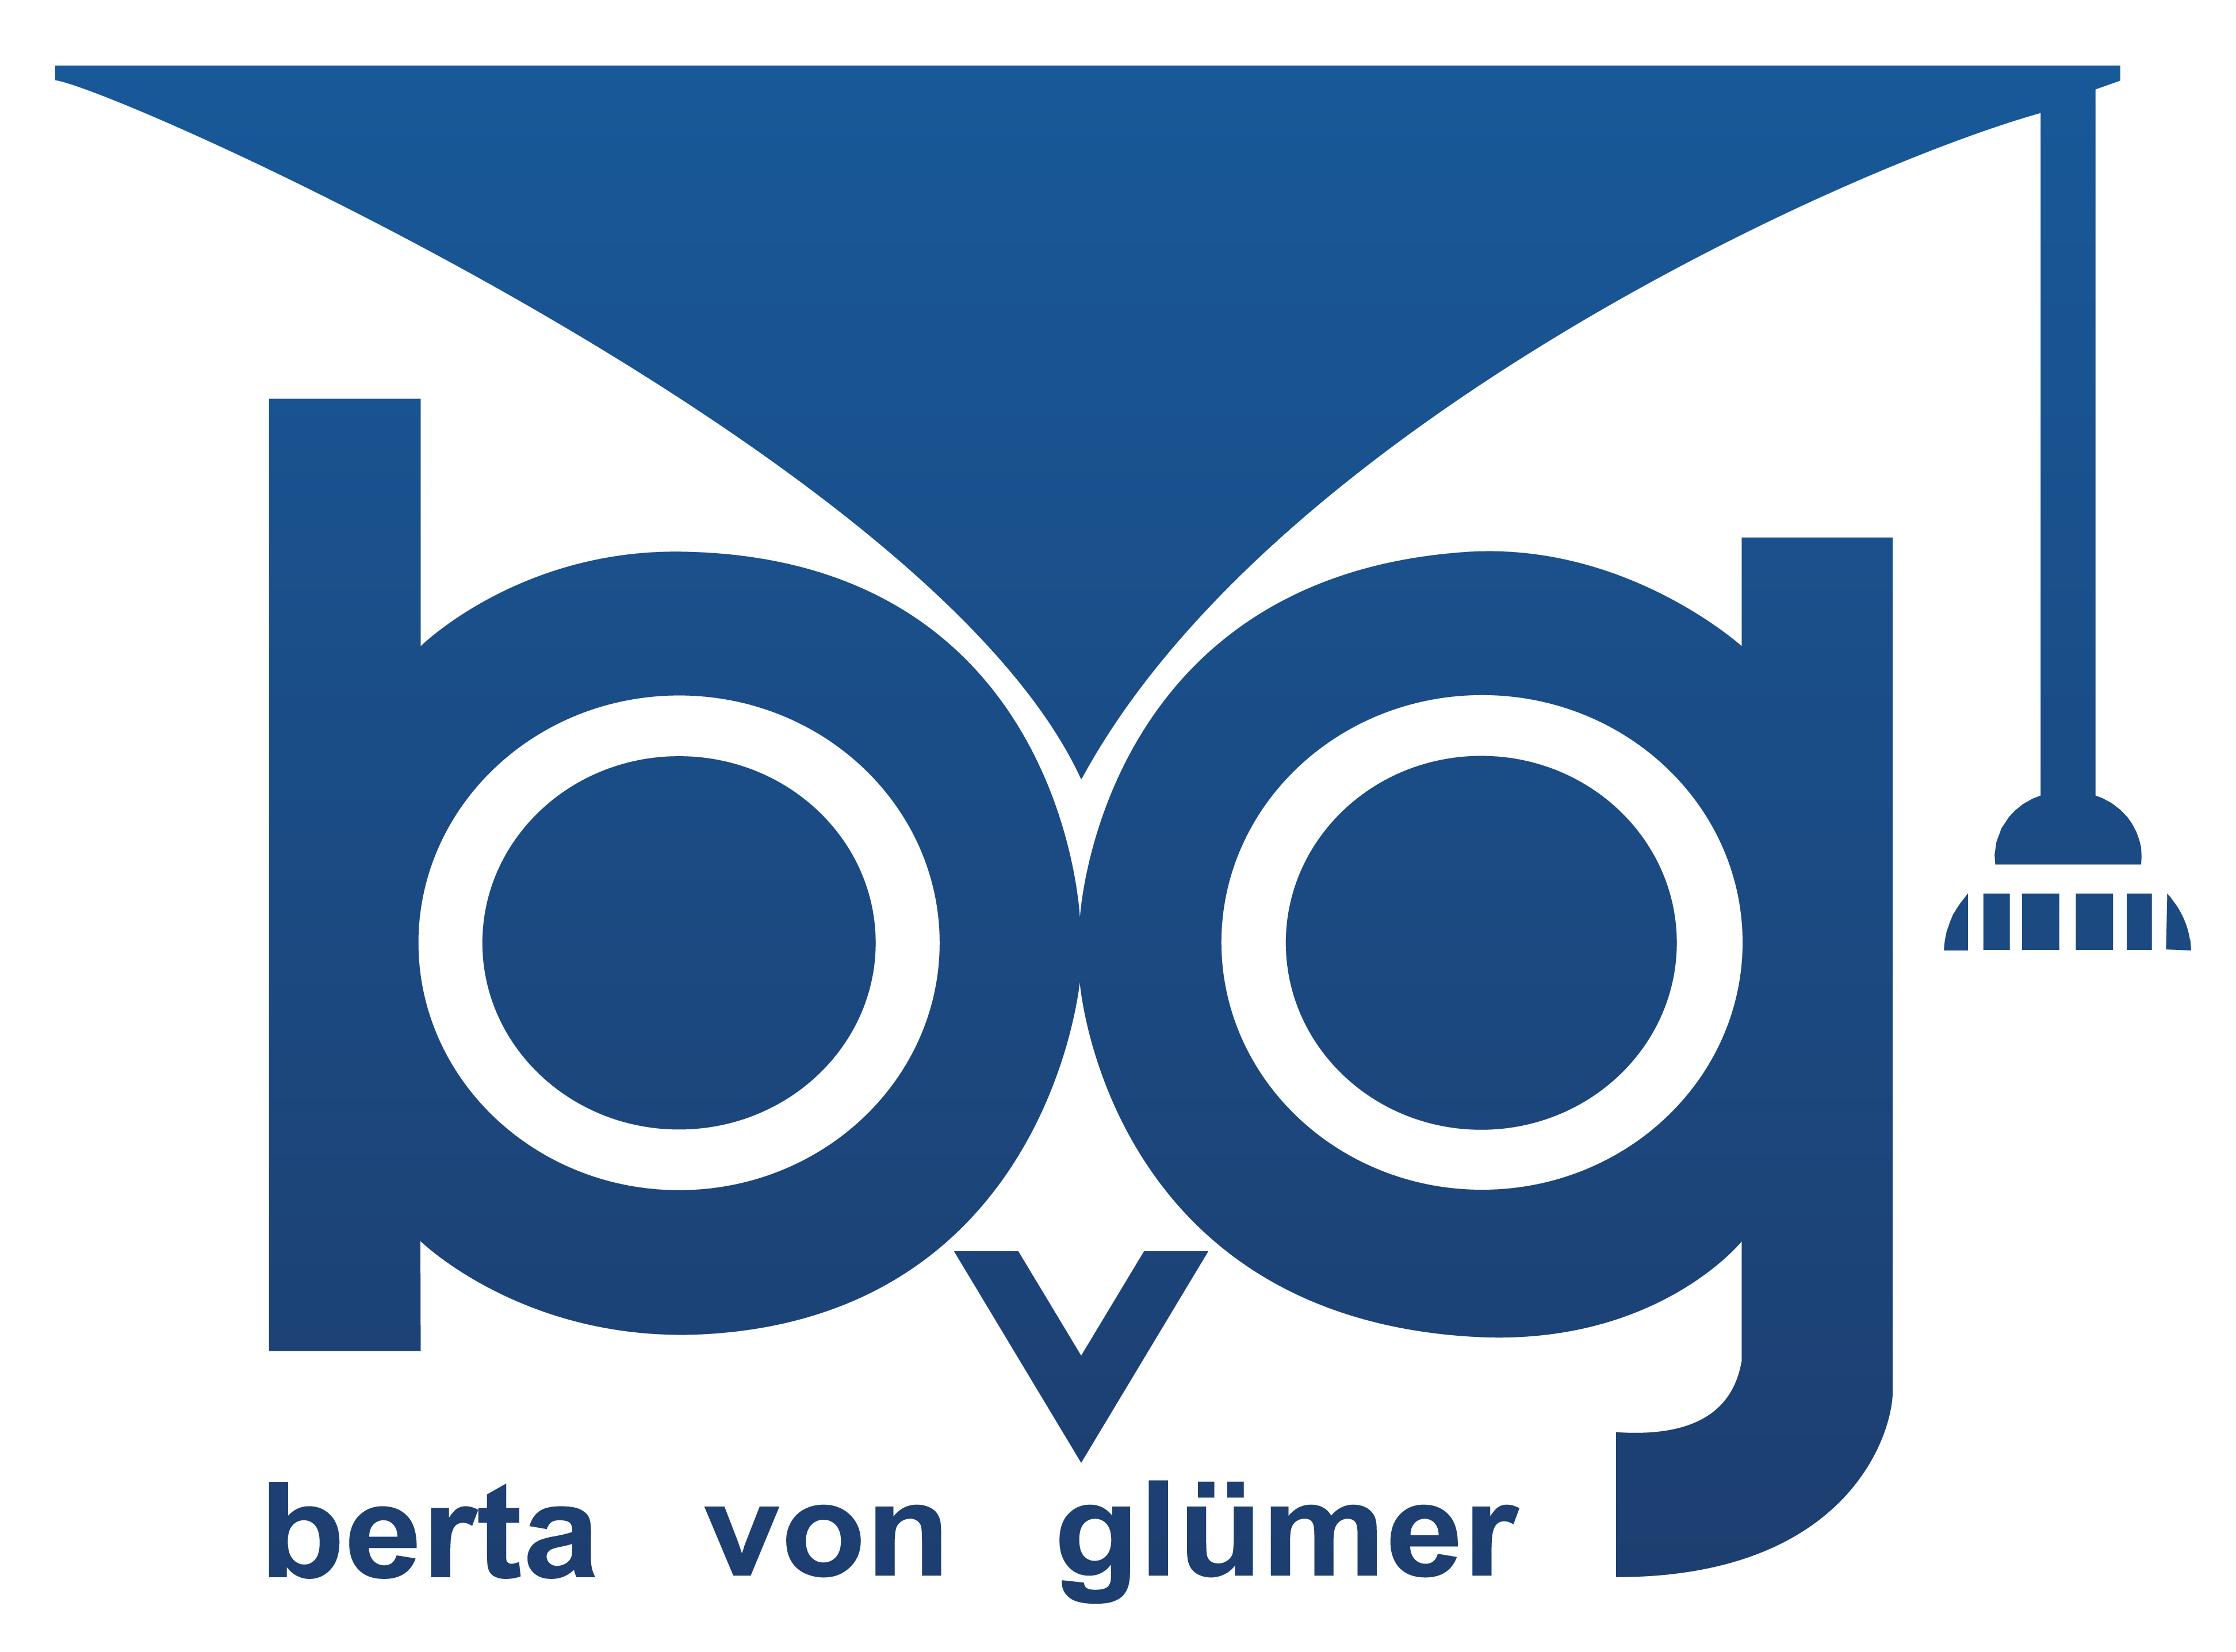 escuela bertha von glumer logo